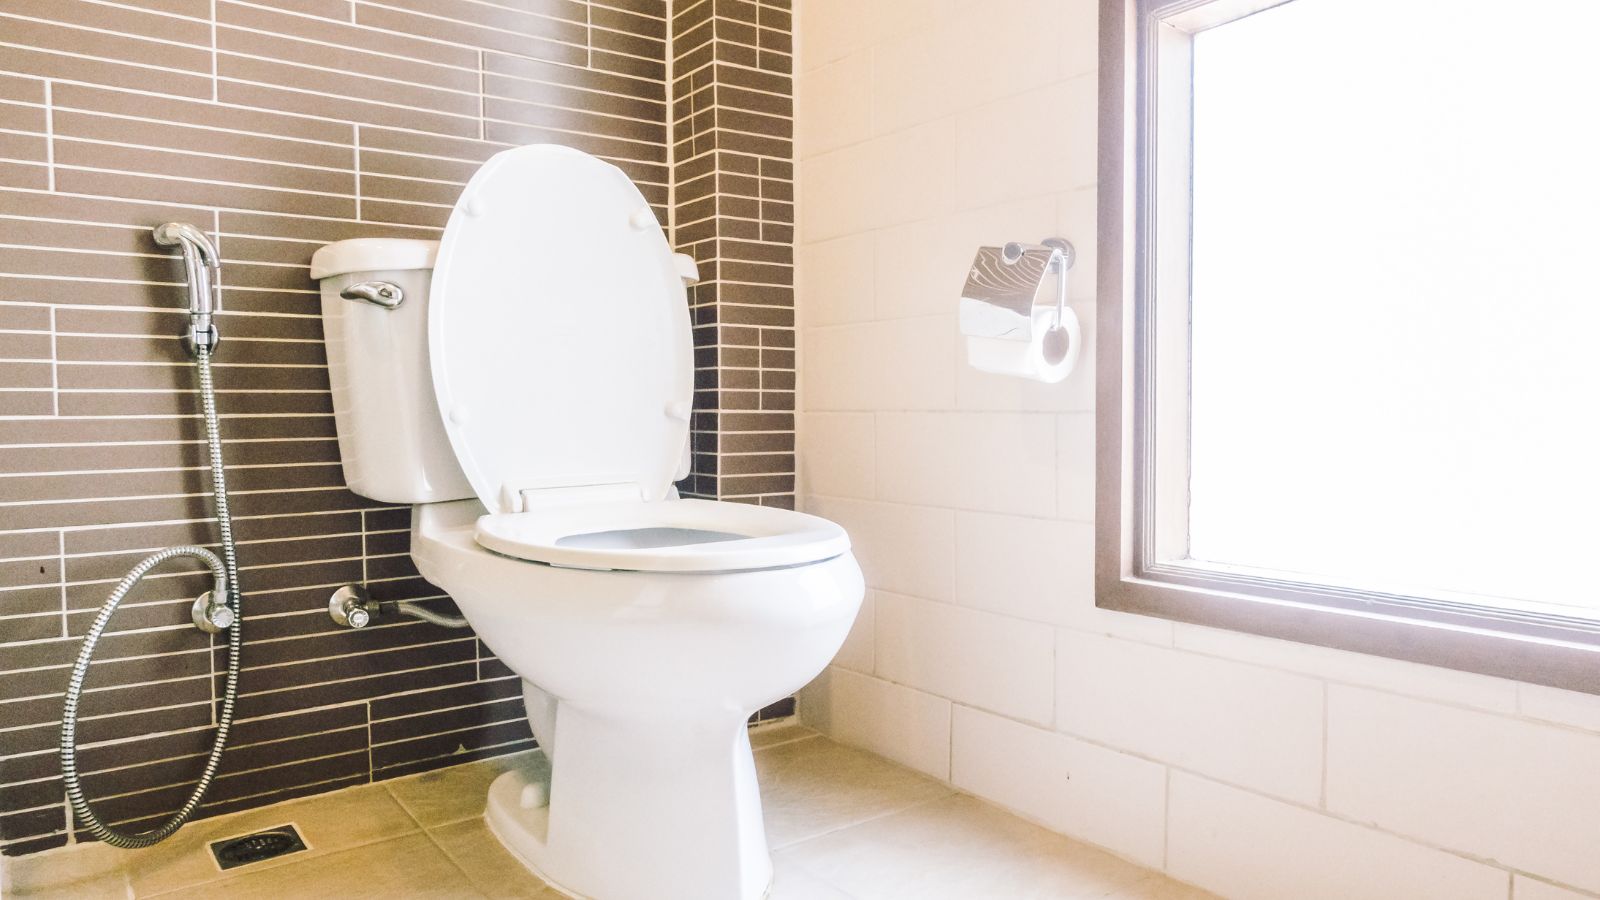 How to Get Rid of Poop Stuck in Toilet